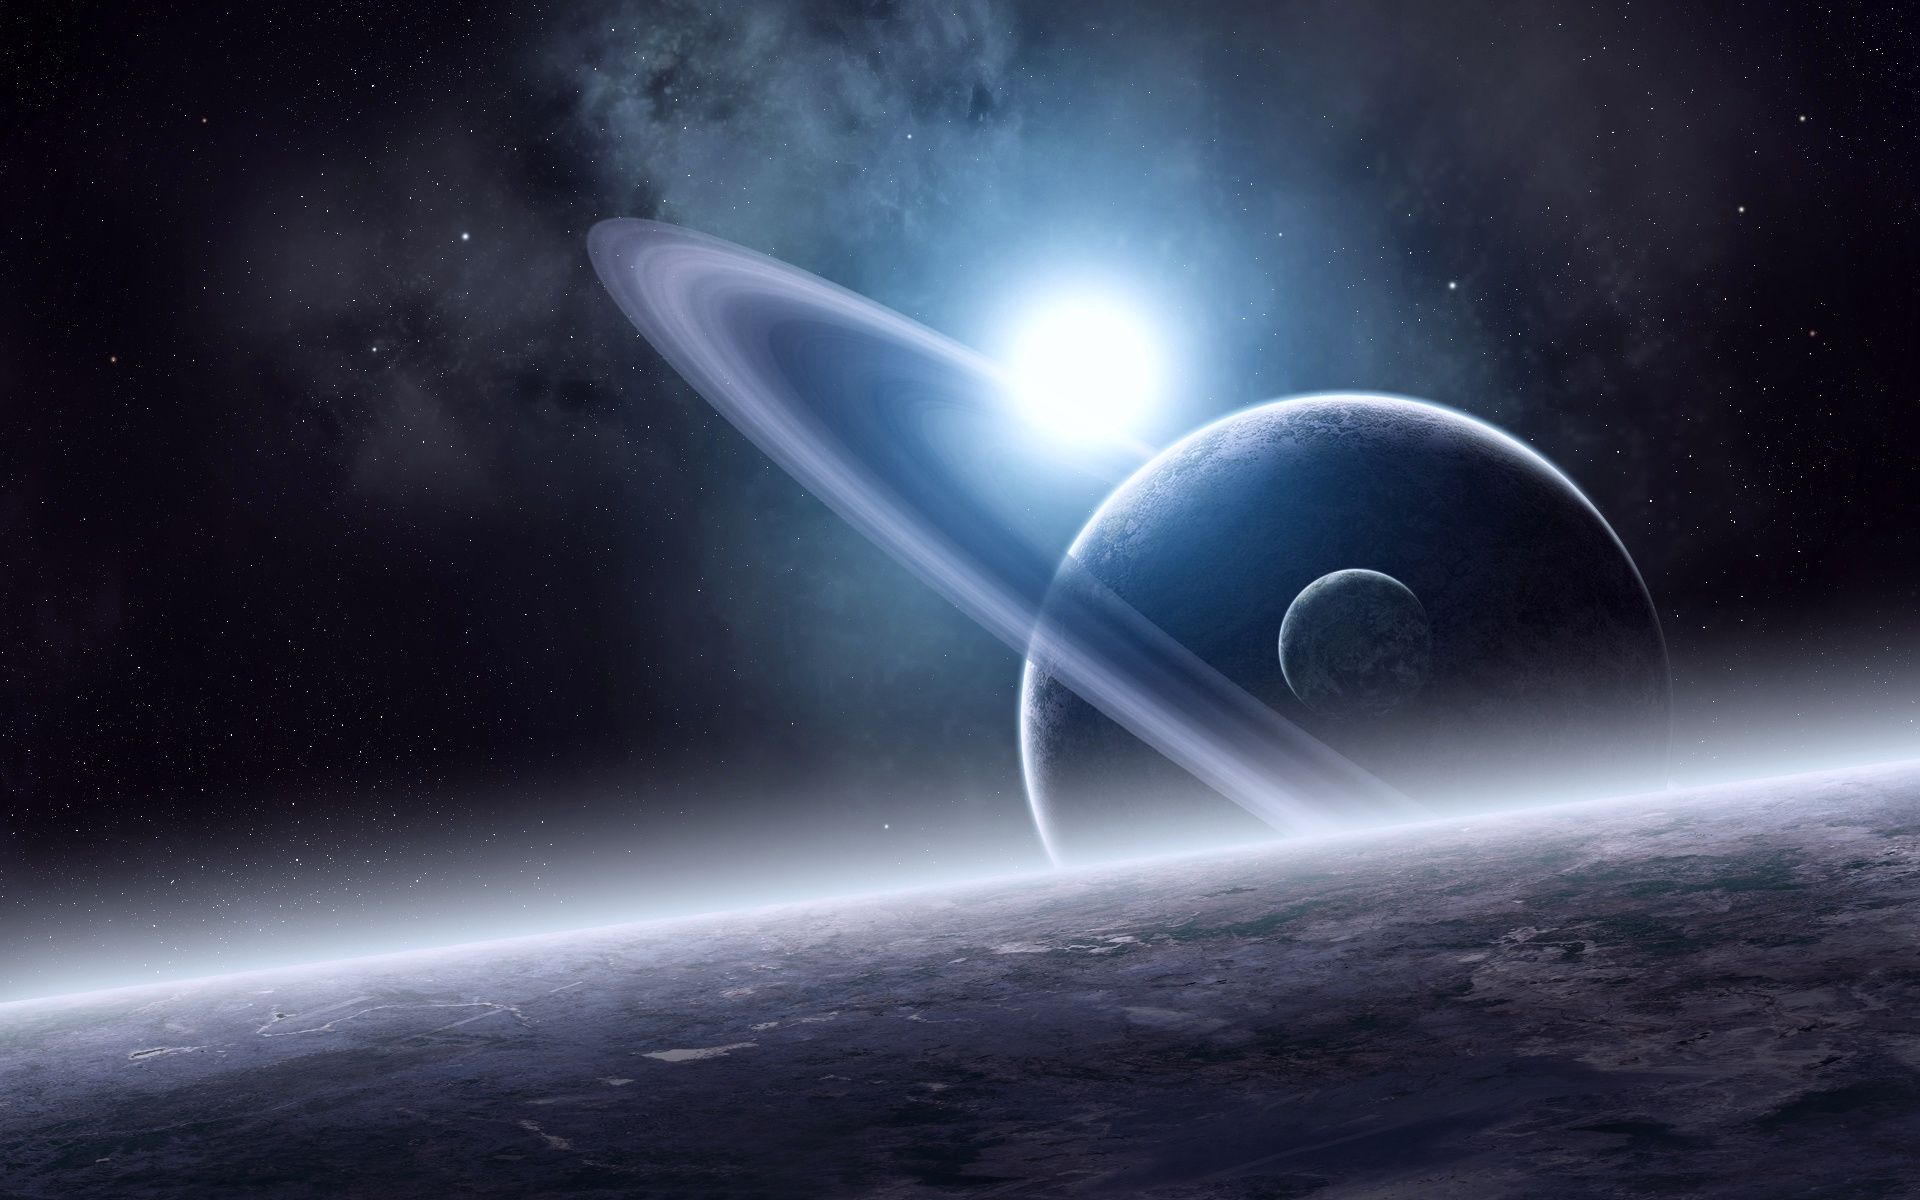 Обои Планета сатурн картинки на рабочий стол на тему Космос - скачать скачать